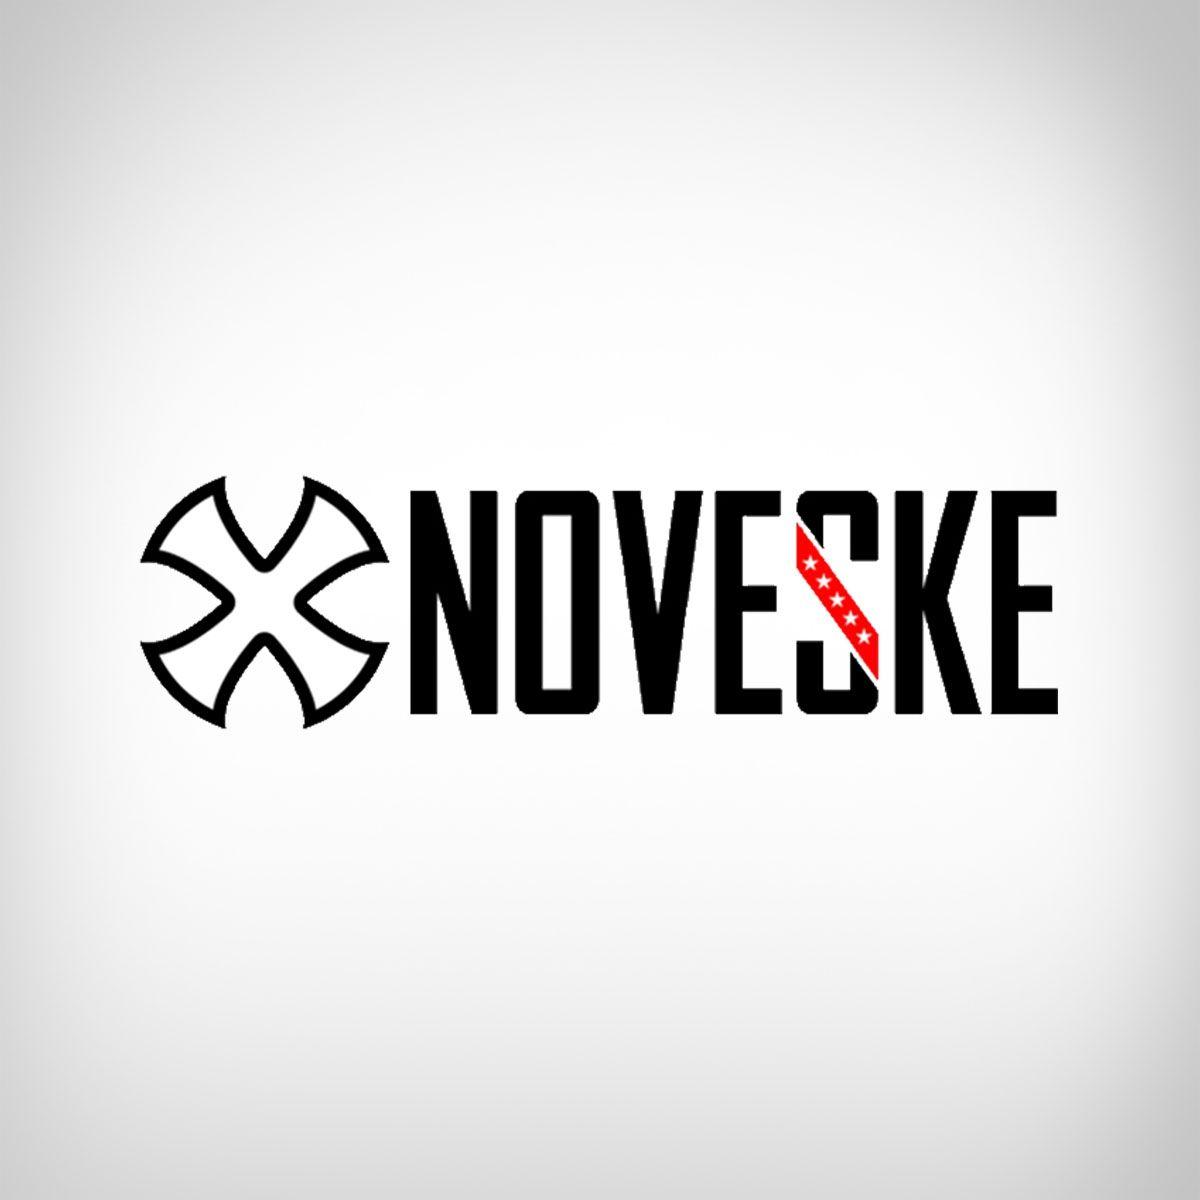 Noveske Logo - Manufacturer: Noveske. AR 15 Parts, Rifles From Noveske